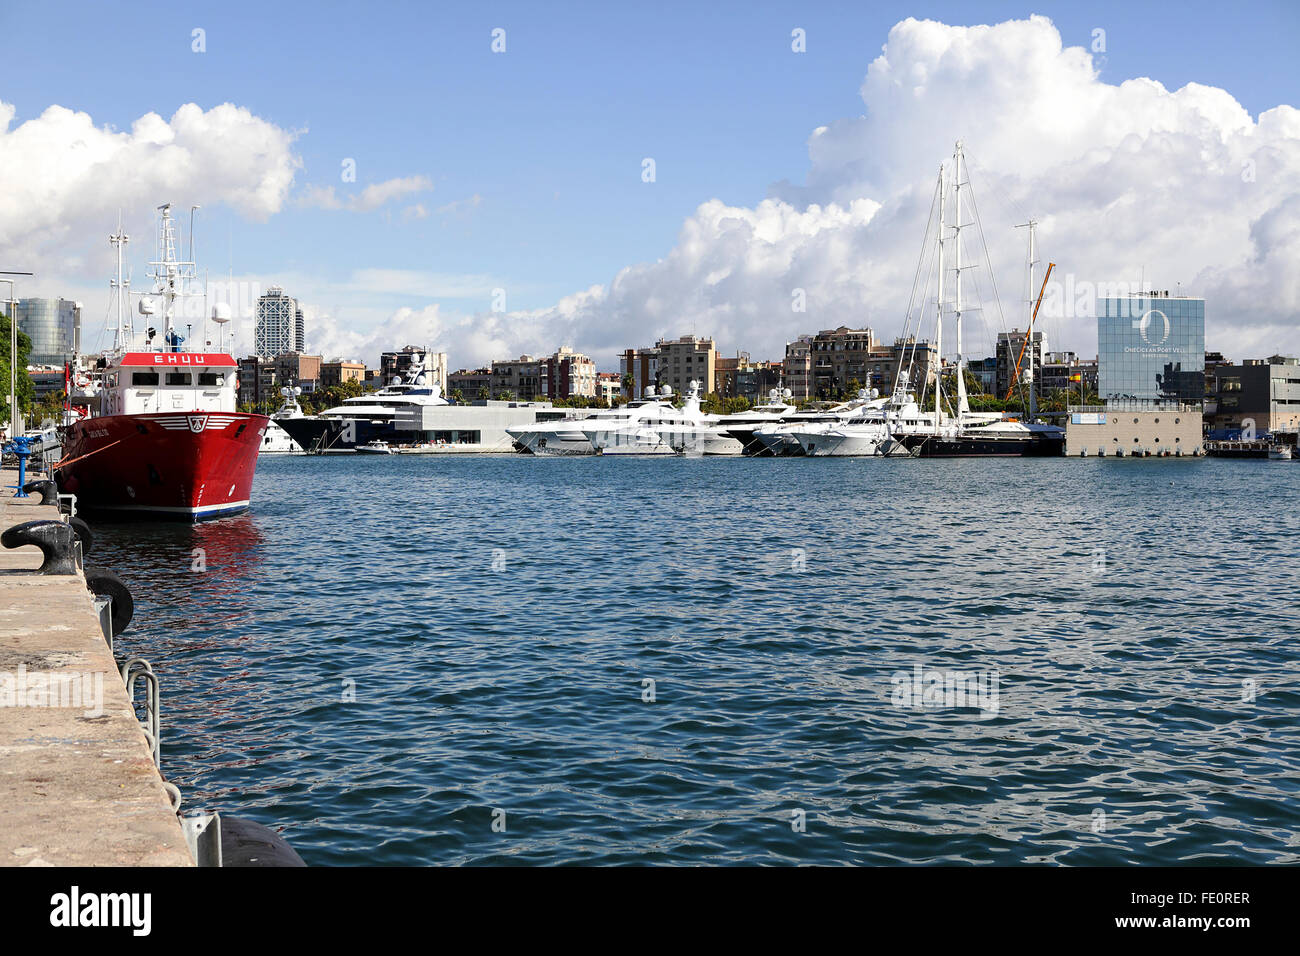 Image sélectionnée de l'emplacement autour de Port Vell vu ici, avec super yacht anchorage dans le lointain. Banque D'Images